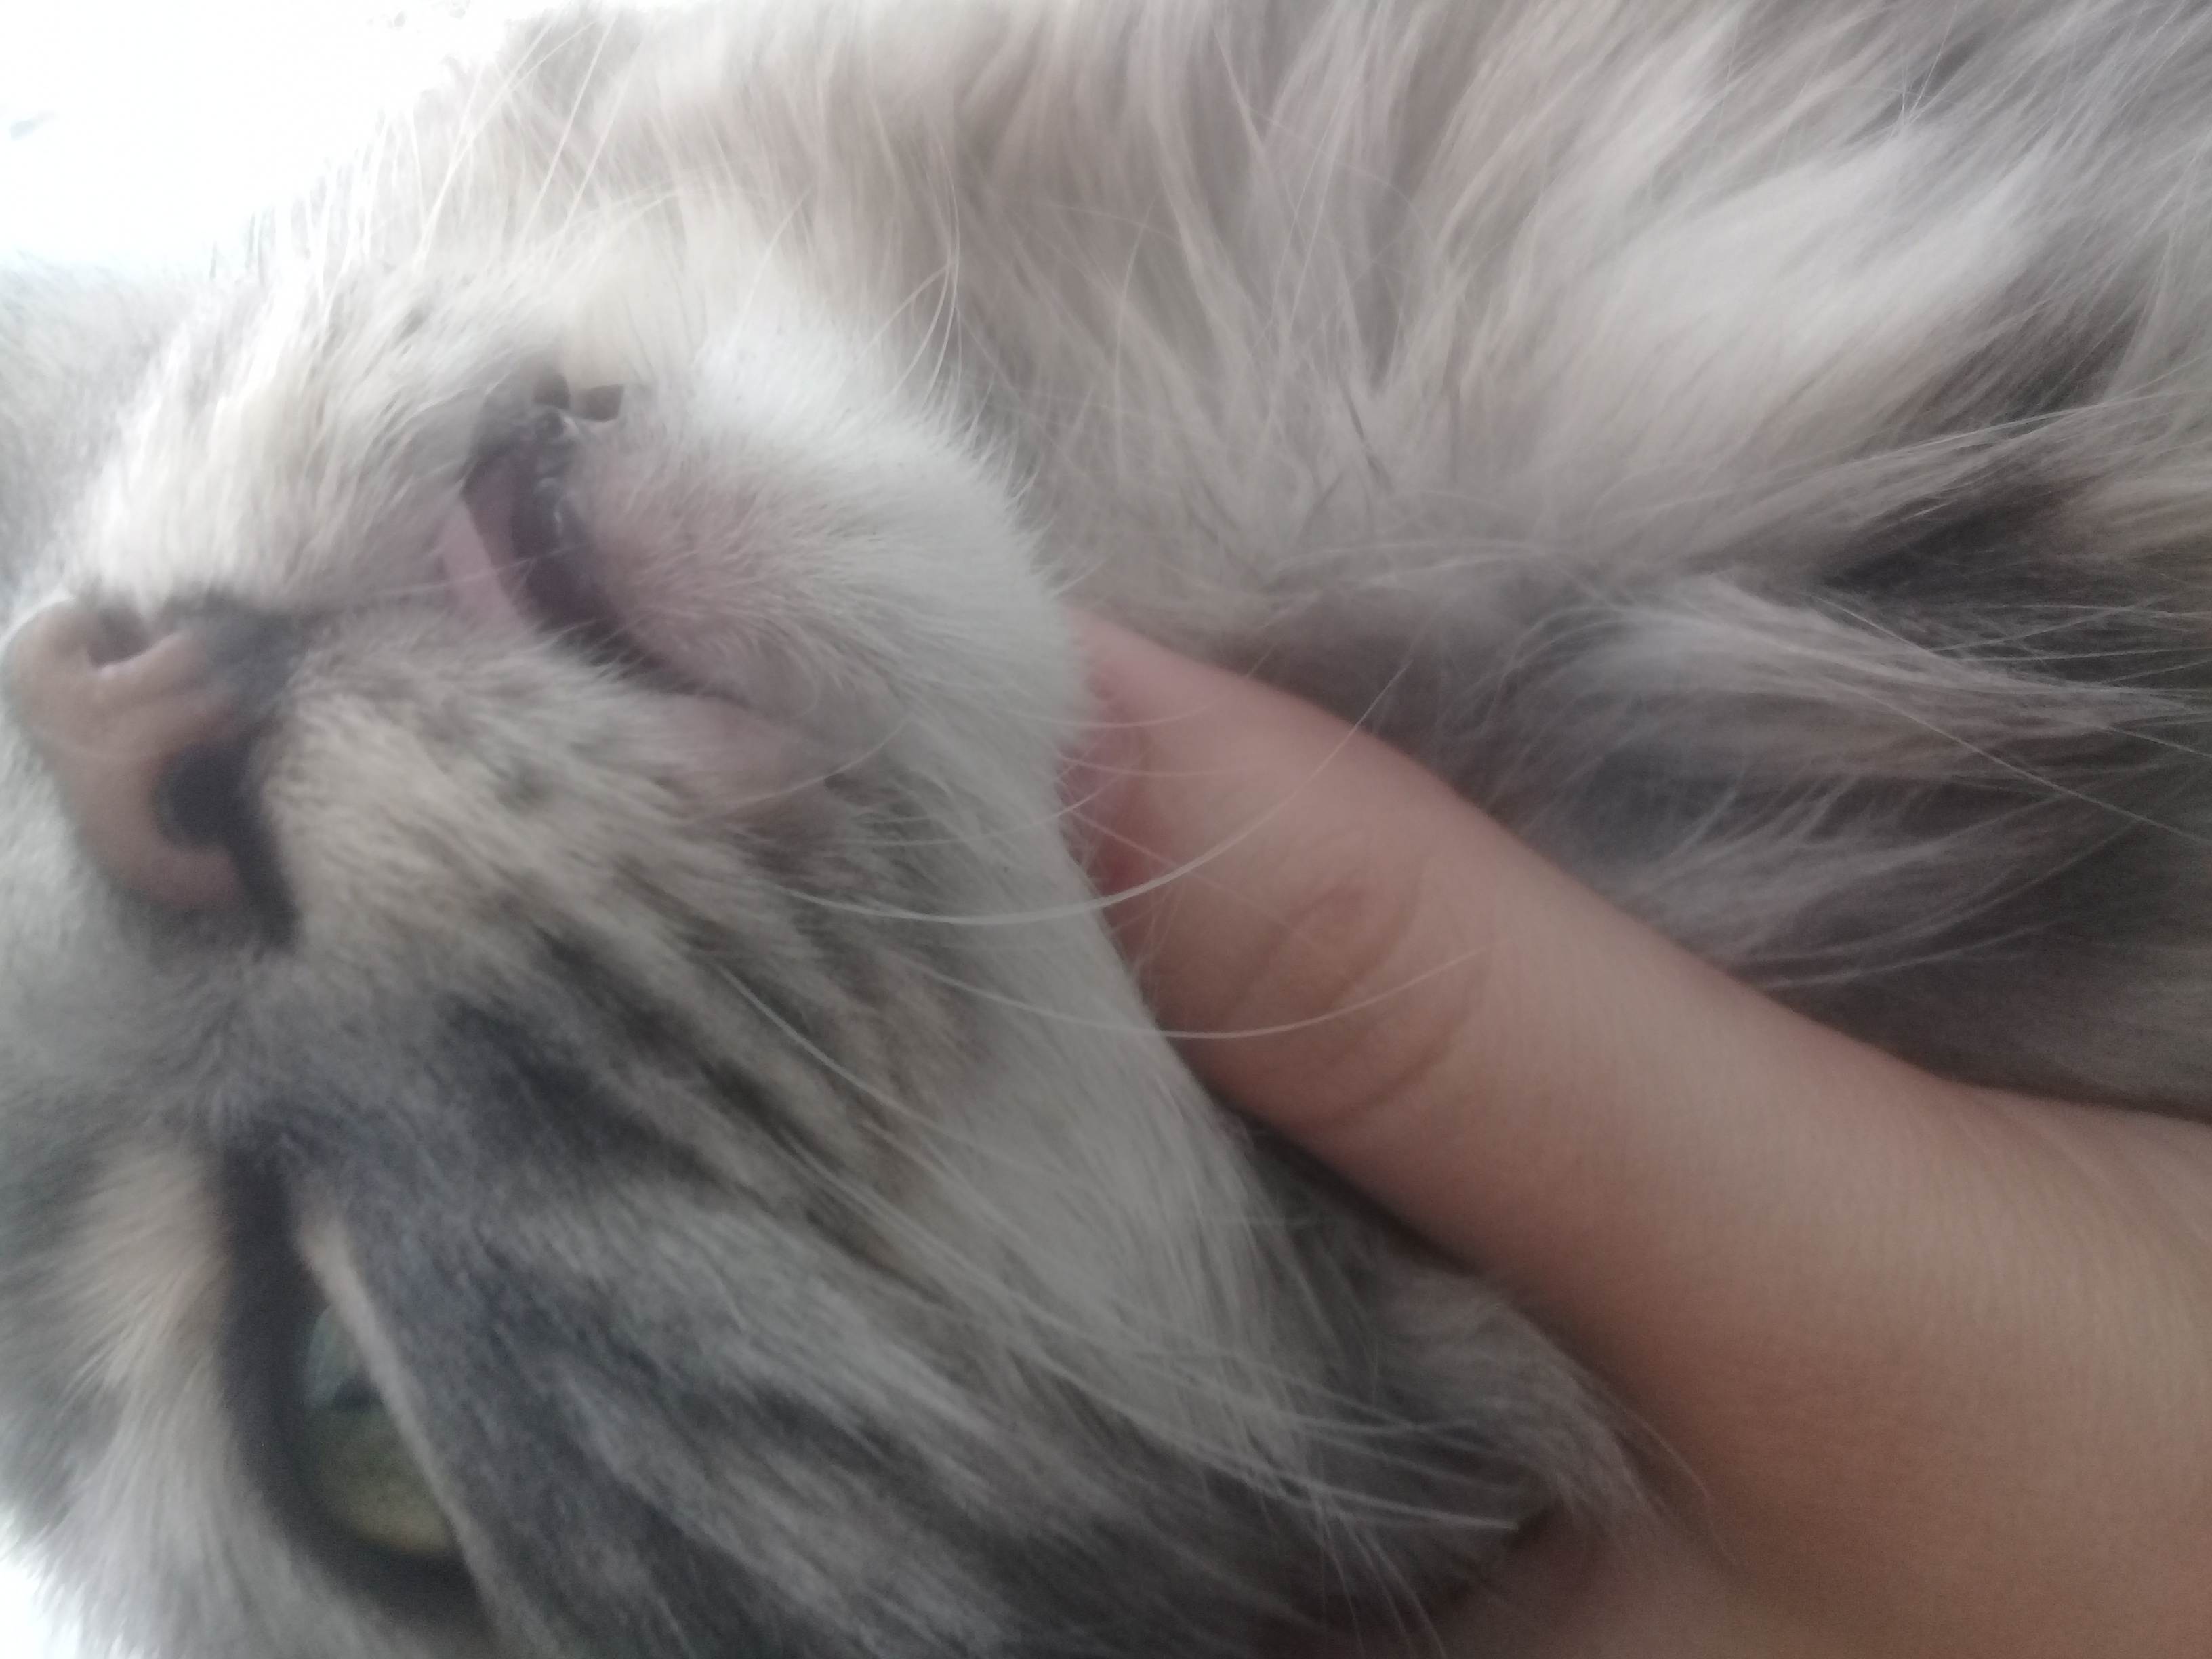 Почему у кота воняет изо рта тухлятиной? когда нужно идти к врачу, если у кота изо рта воняет тухлятиной?